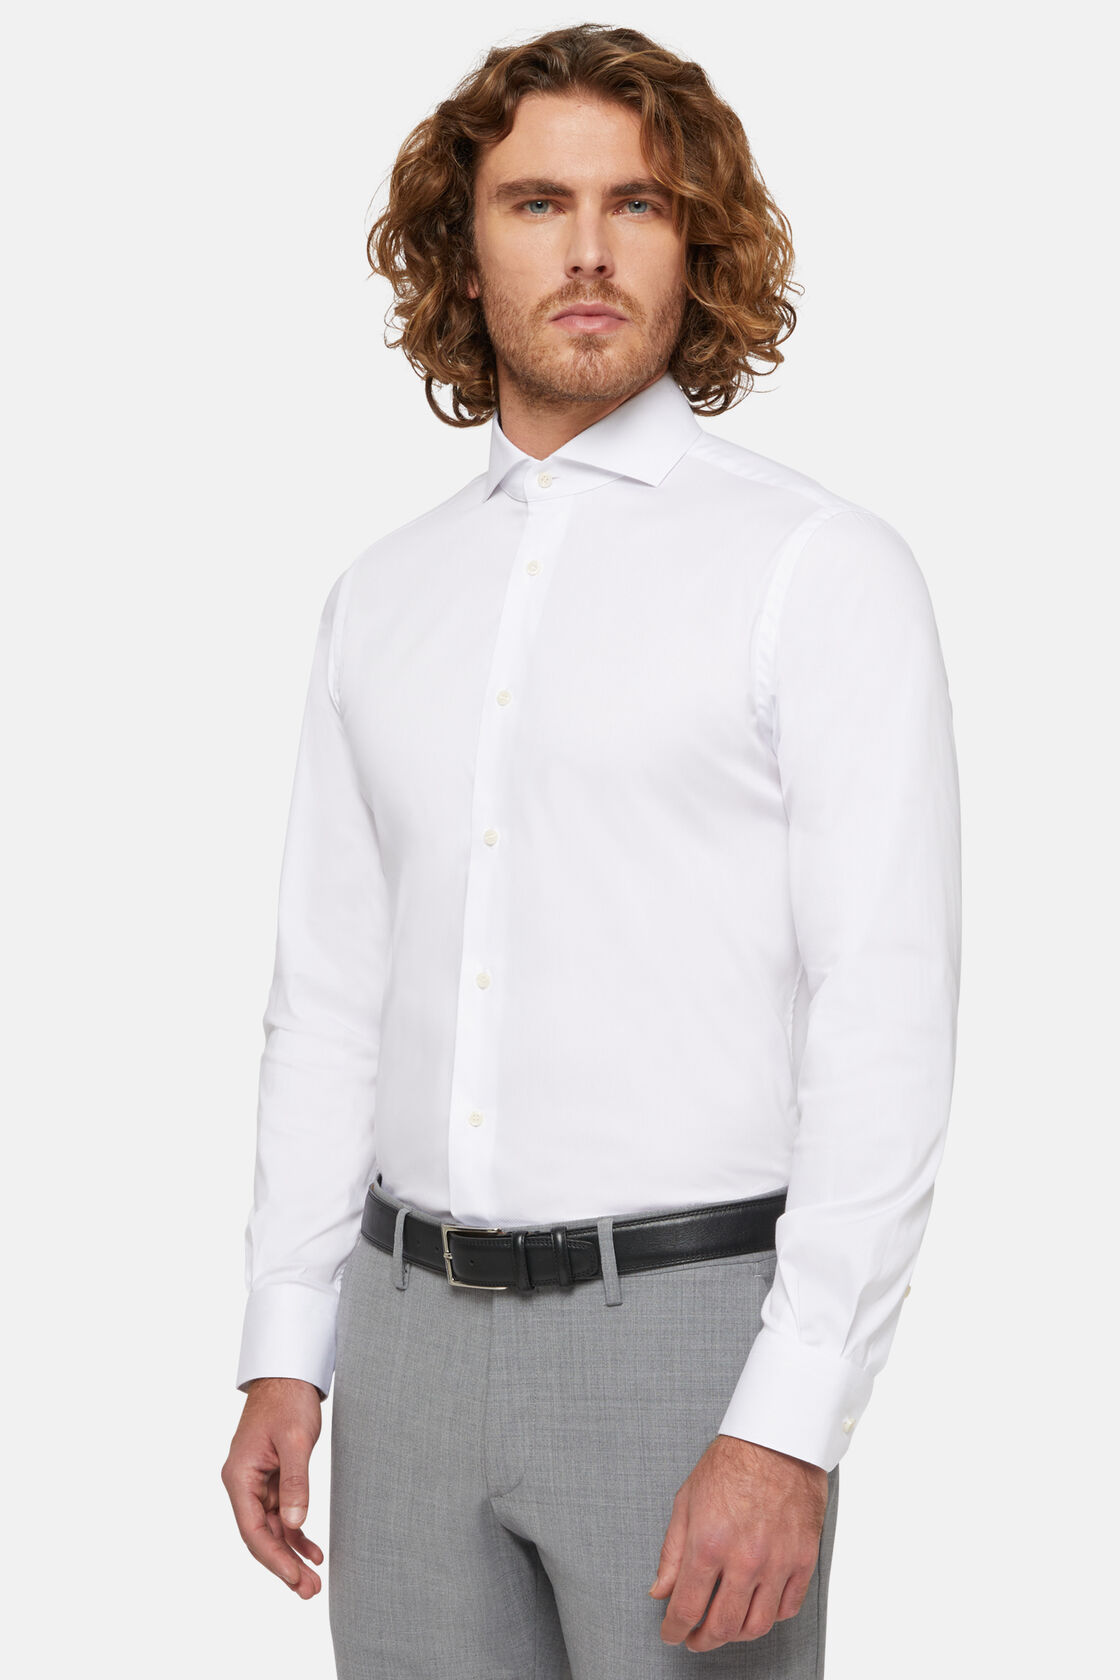 Λευκό ελαστικό πουκάμισο από βαμβάκι/νάιλον στενής εφαρμογής, White, hi-res